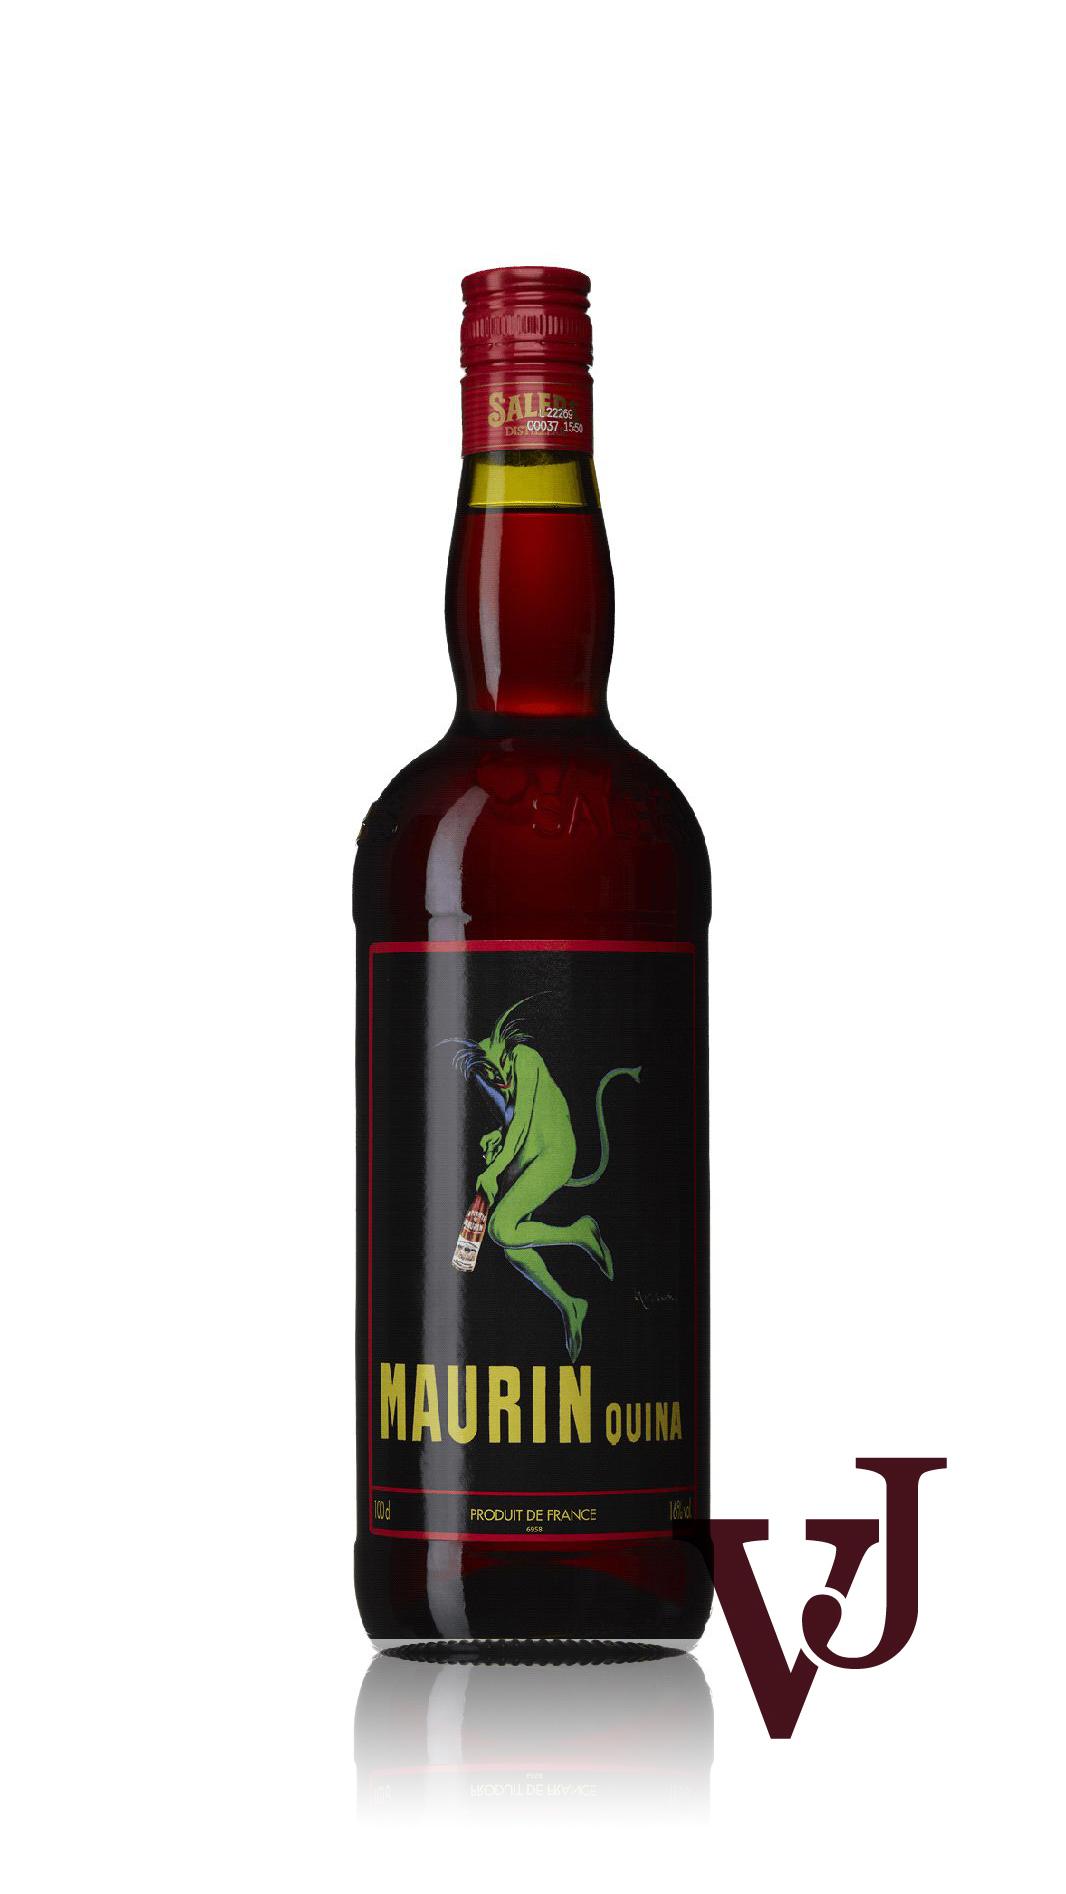 Övrigt vin - Maurin Quina Cherry Vermouth artikel nummer 5450201 från producenten PAGES VEDRENNE SAS från området Frankrike